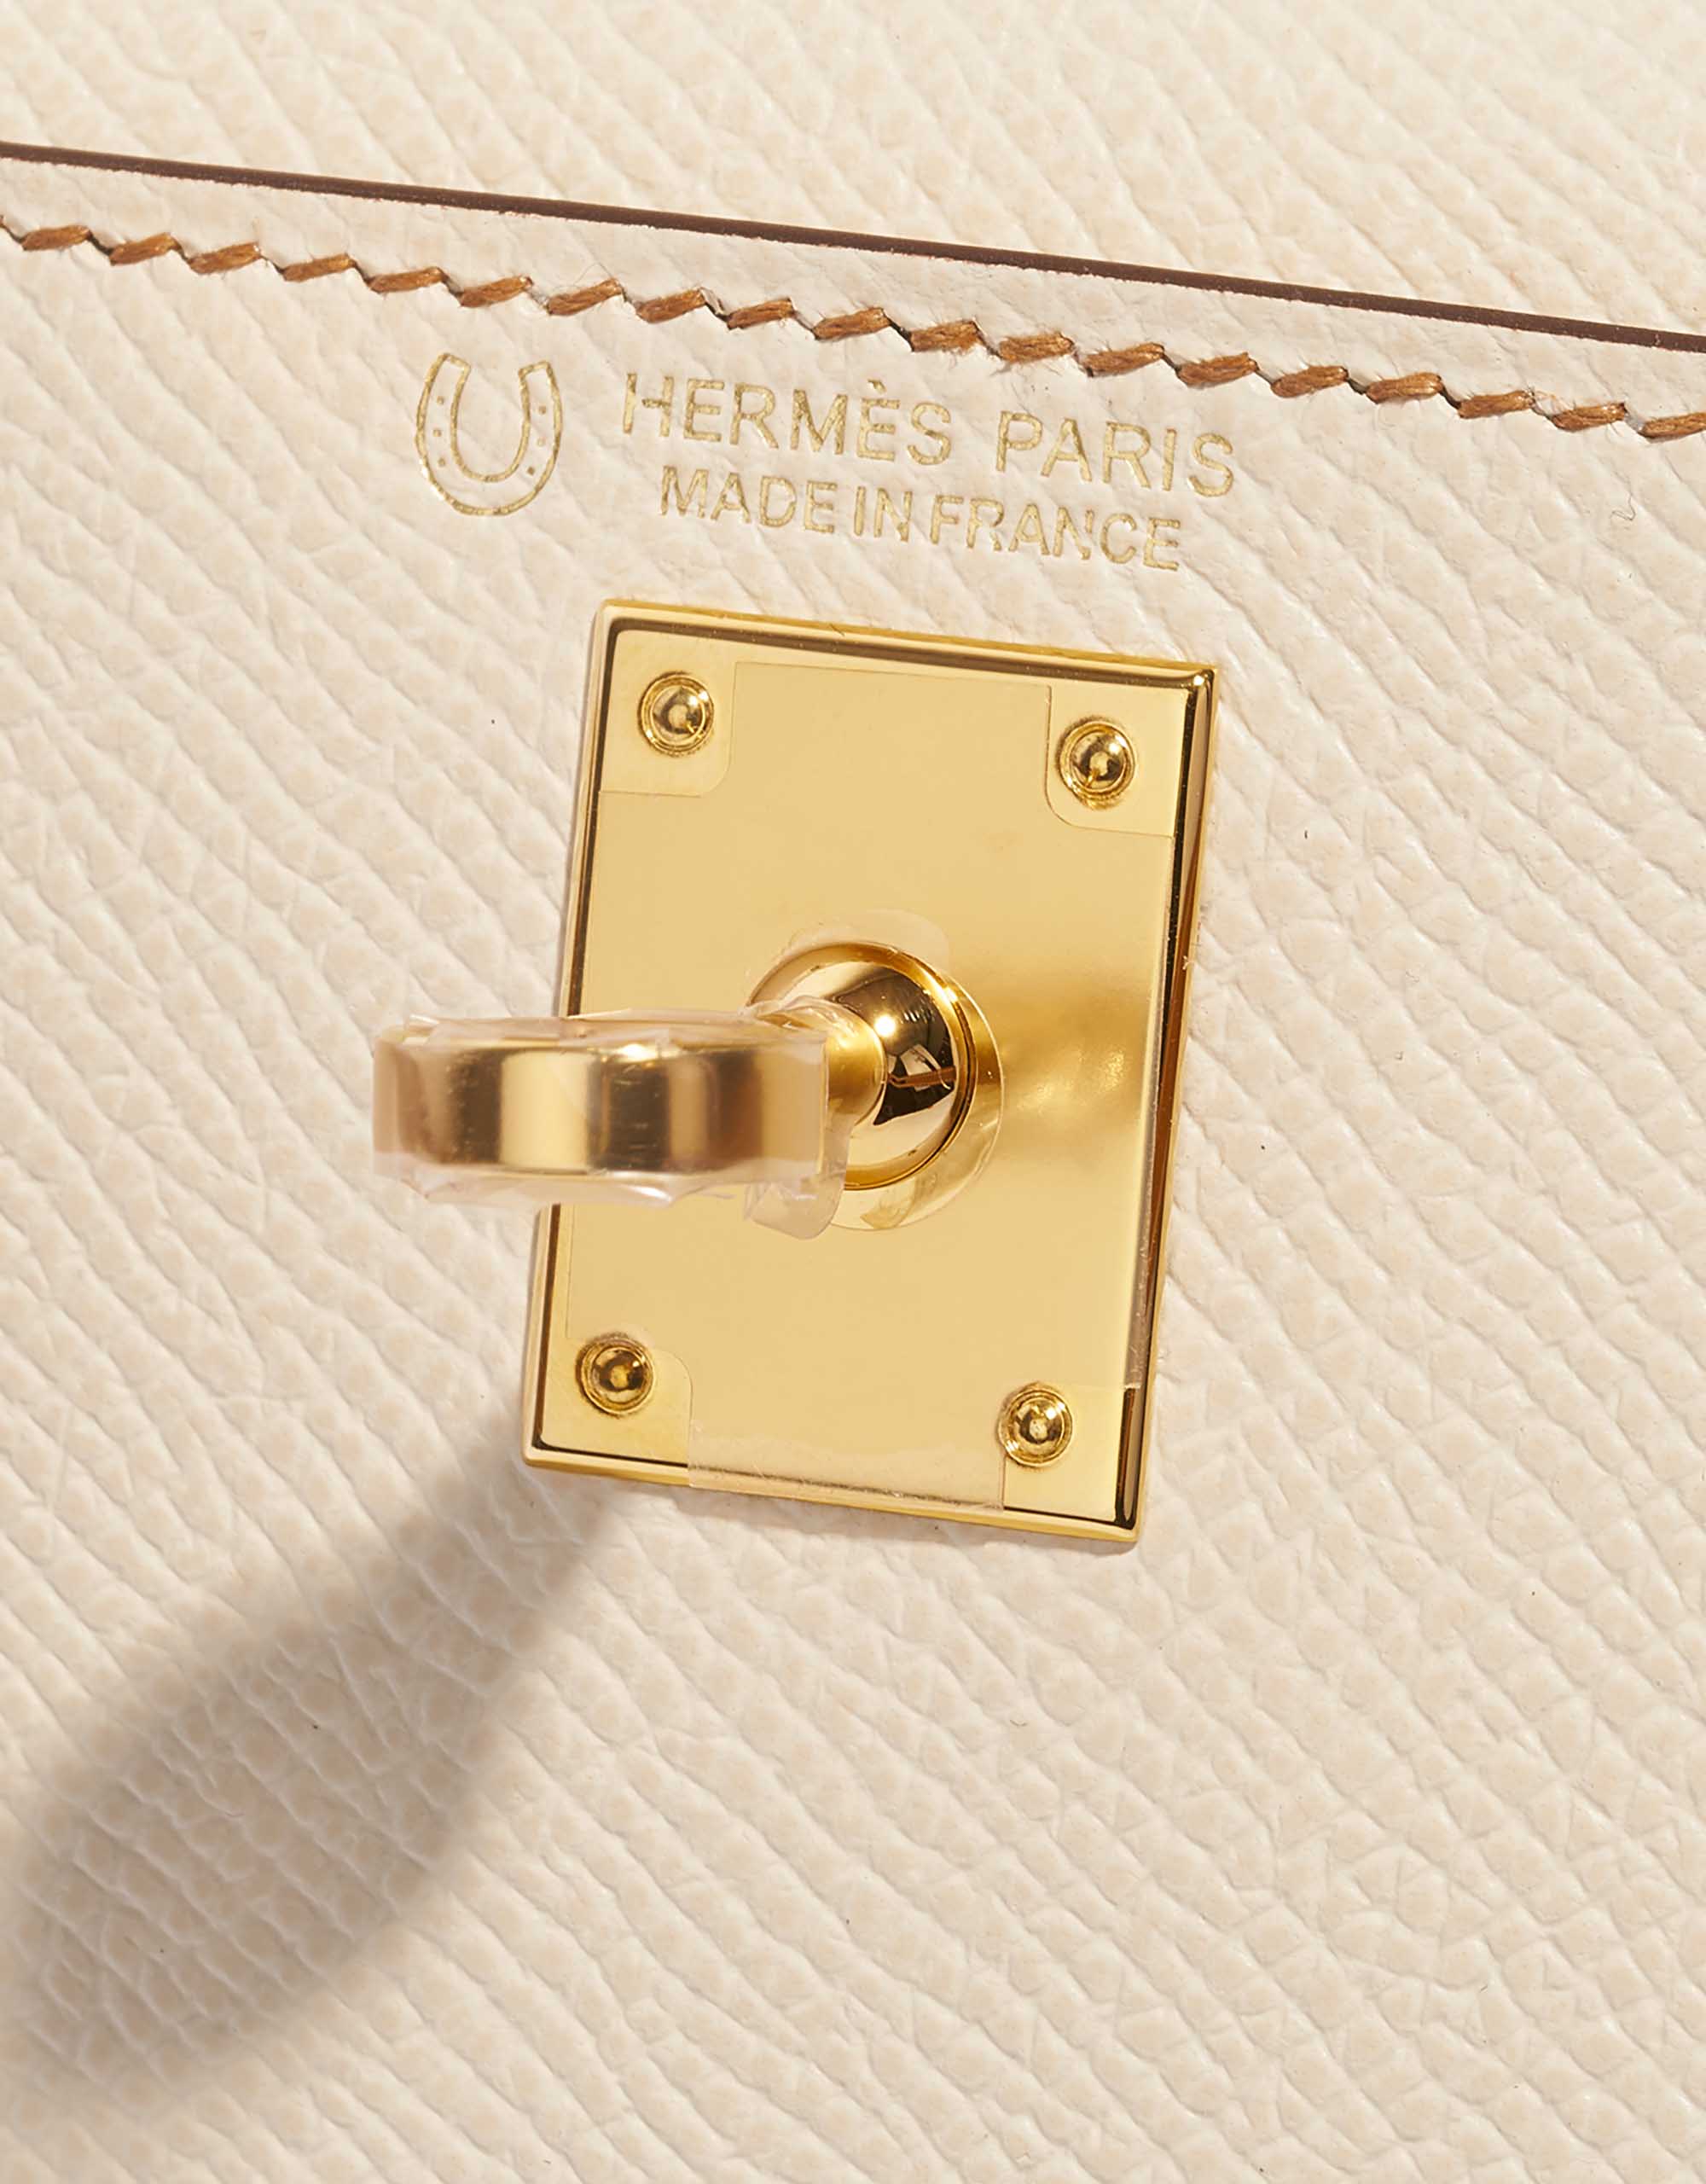 Gebrauchte Hermès Tasche Kelly Mini Epsom Craie / Gold Braun, Grau Logo | Verkaufen Sie Ihre Designer-Tasche auf Saclab.com